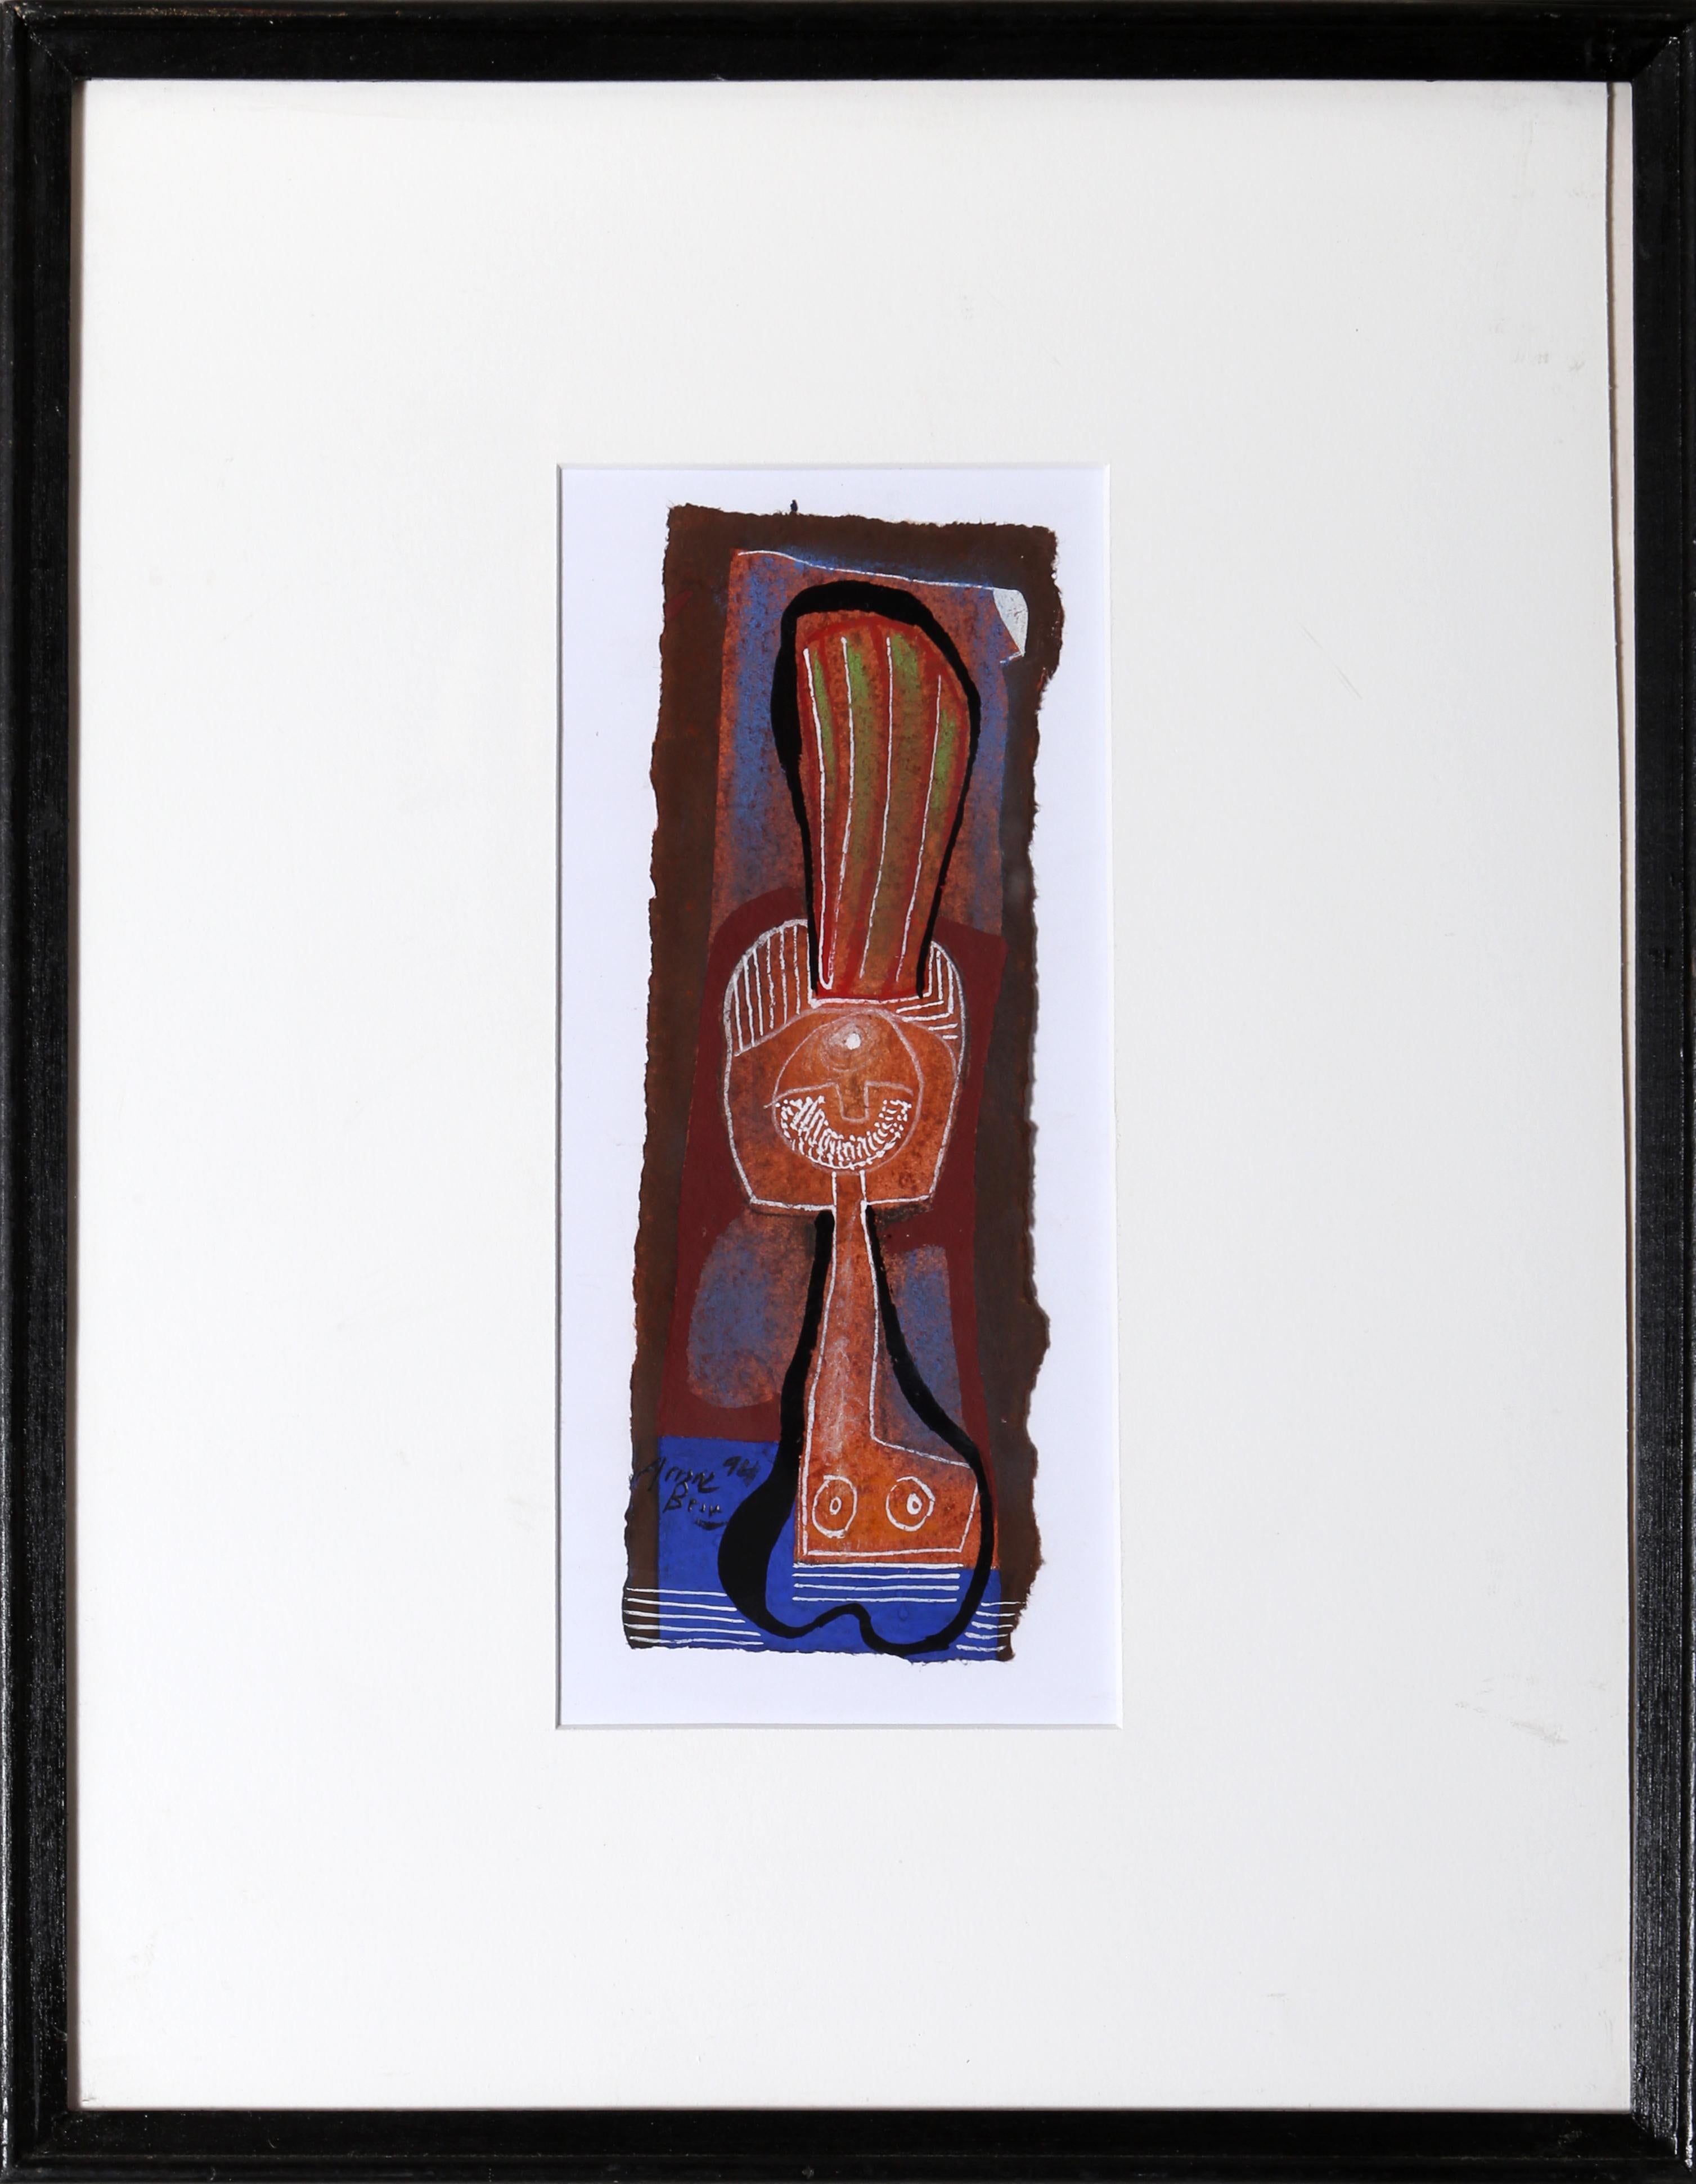 Œuvre d'art abstraite Mixed Media de l'artiste espagnol Eduardo Arranz-Bravo.

Cadaques n° 22
Eduardo Arranz-Bravo, espagnol (1941)
Date : 1994
Technique mixte sur papier, signée en bas à gauche
Taille : 8 x 2.5 in. (20.32 x 6.35 cm)
Taille du cadre